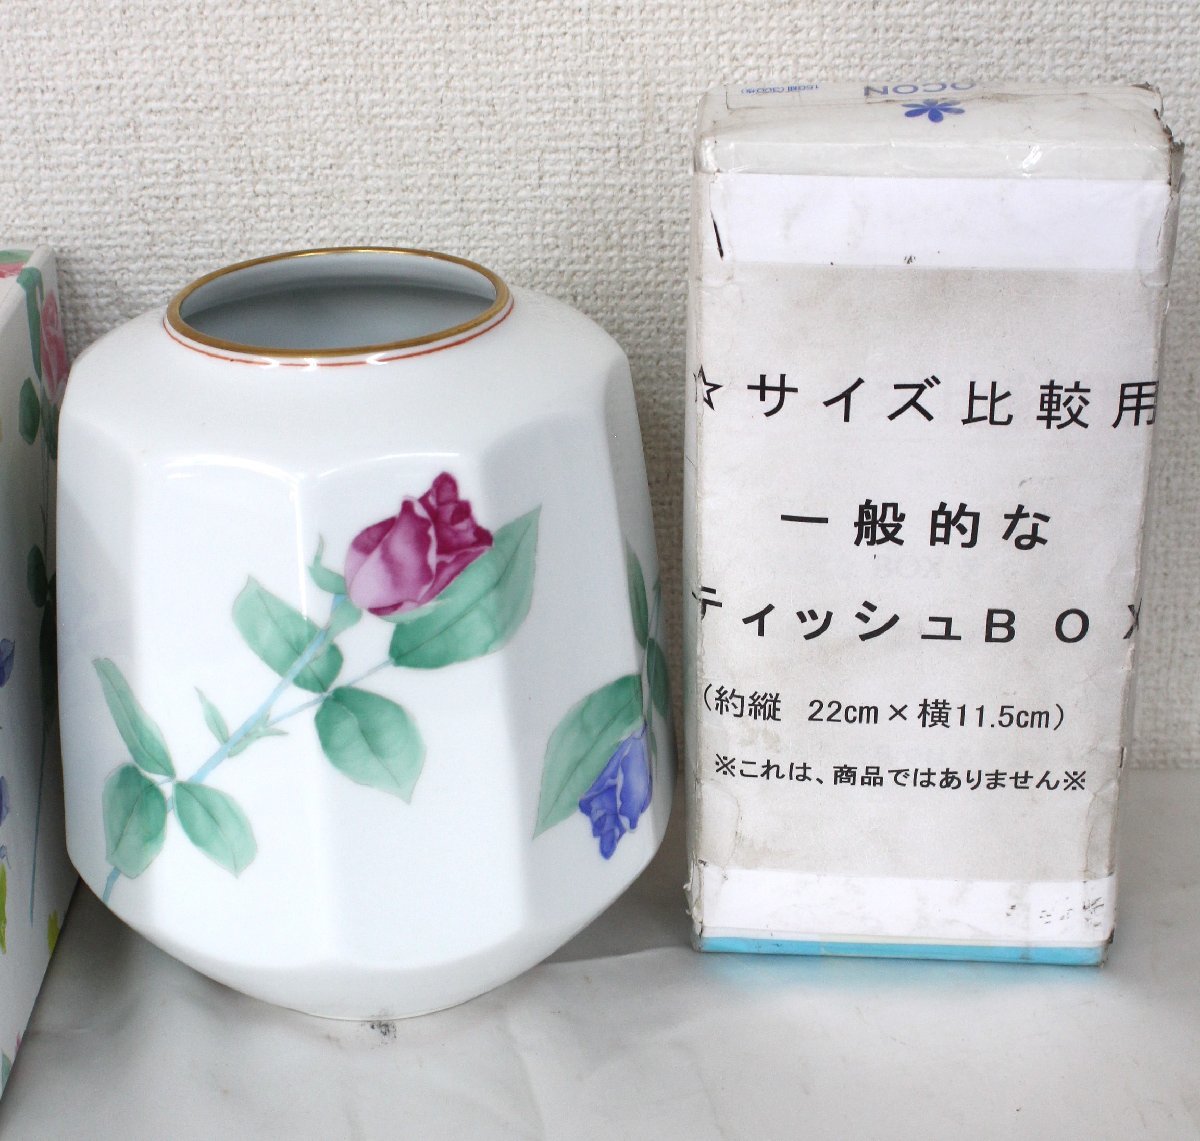 0 прекрасный товар Koransha ваза ваза для цветов 